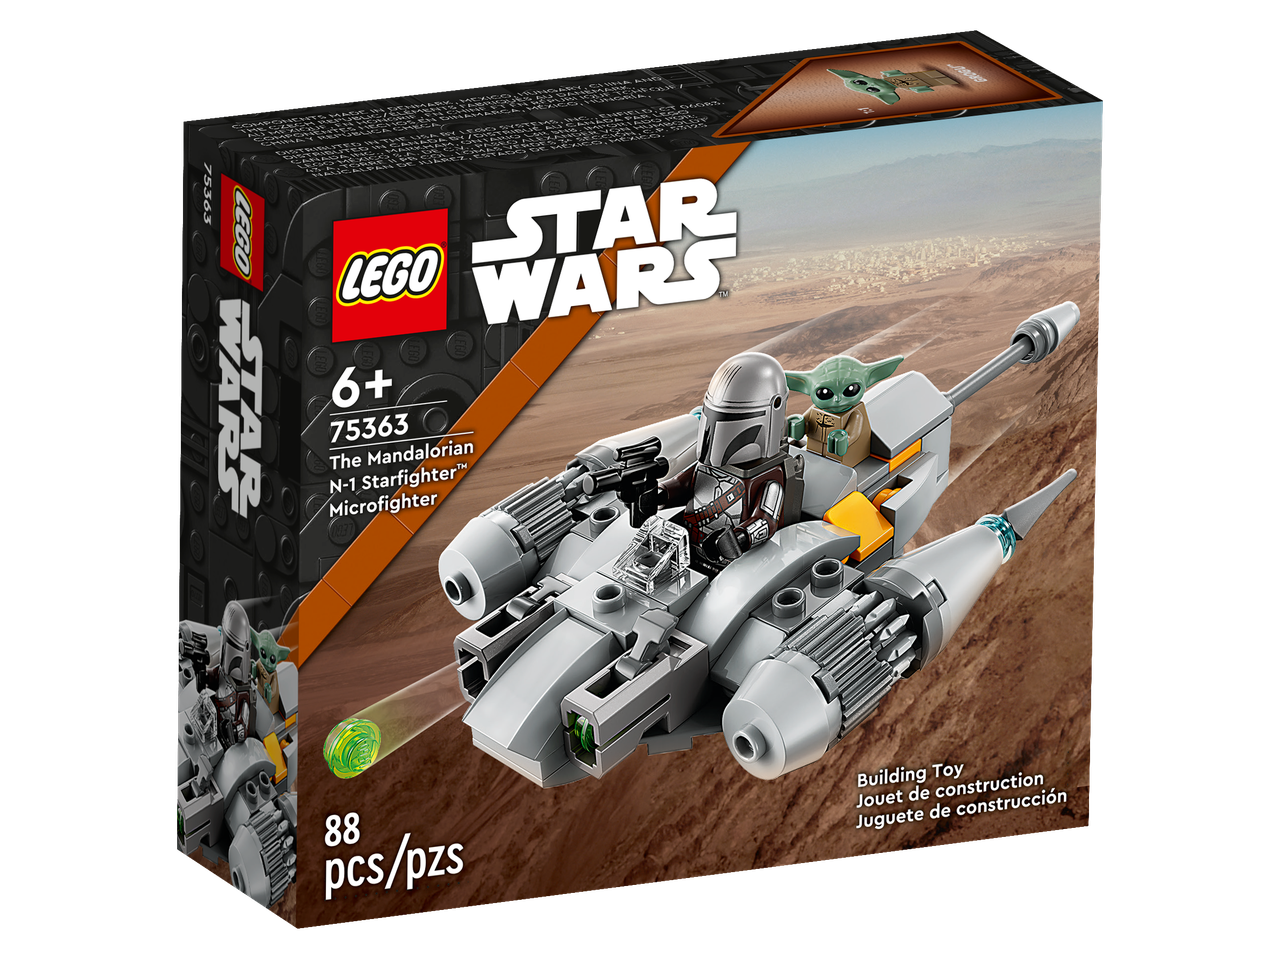 75363 Lego Star Wars Микрофайтер Звездный истребитель N-1 мандалорца Лего Звездные войны